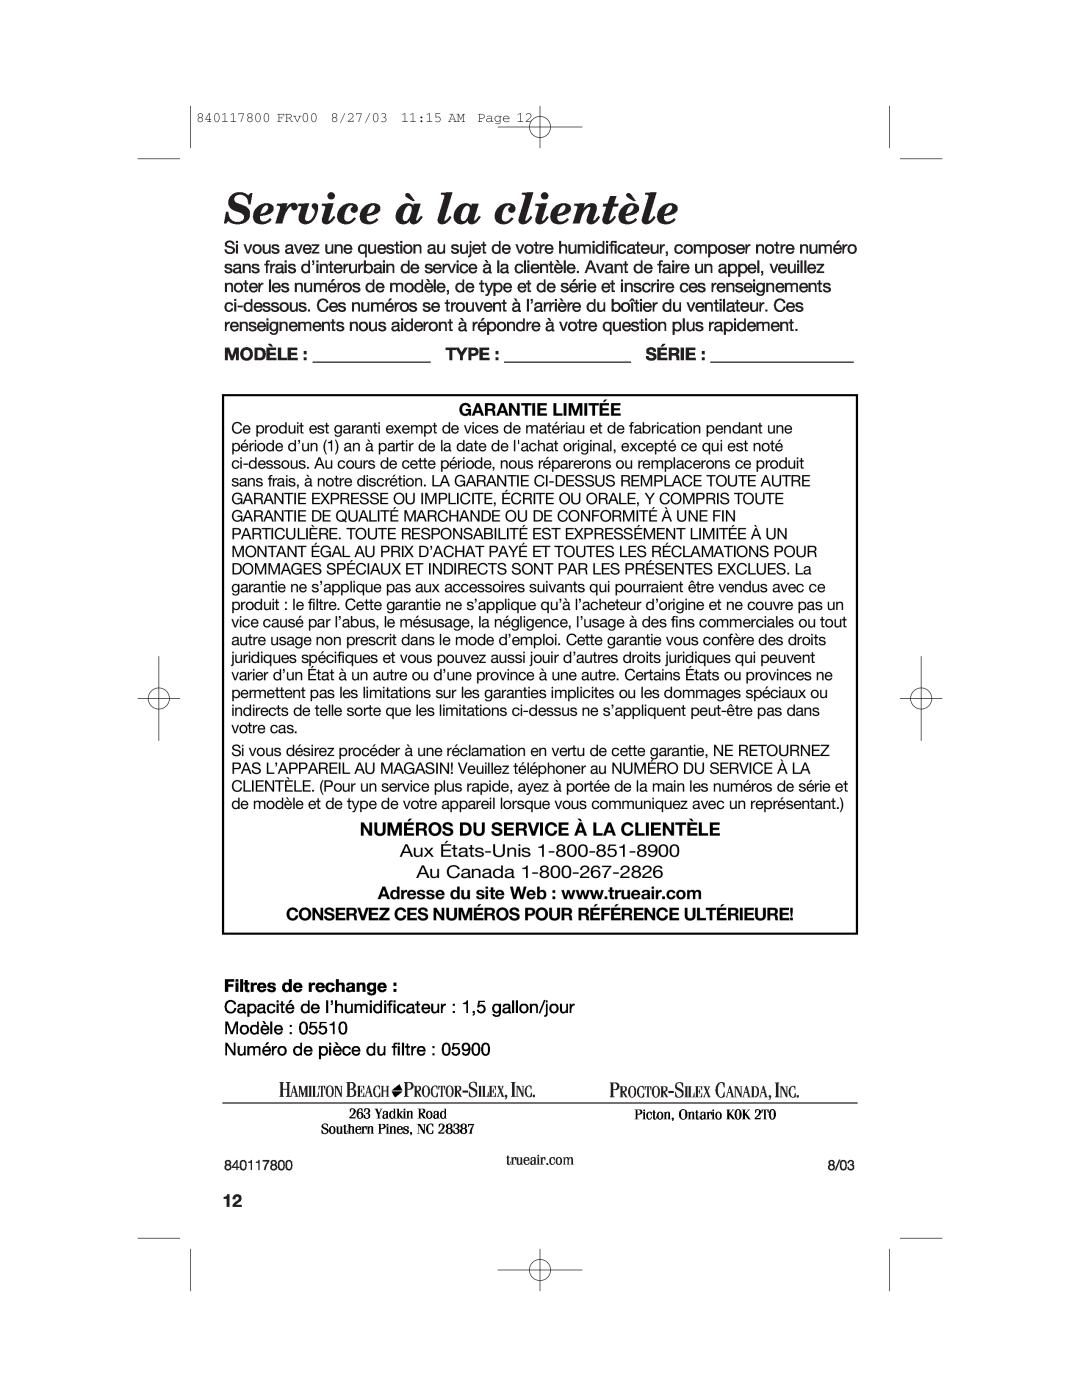 Hamilton Beach 840117800 Service à la clientèle, Numéros Du Service À La Clientèle, Garantie Limitée, Filtres de rechange 